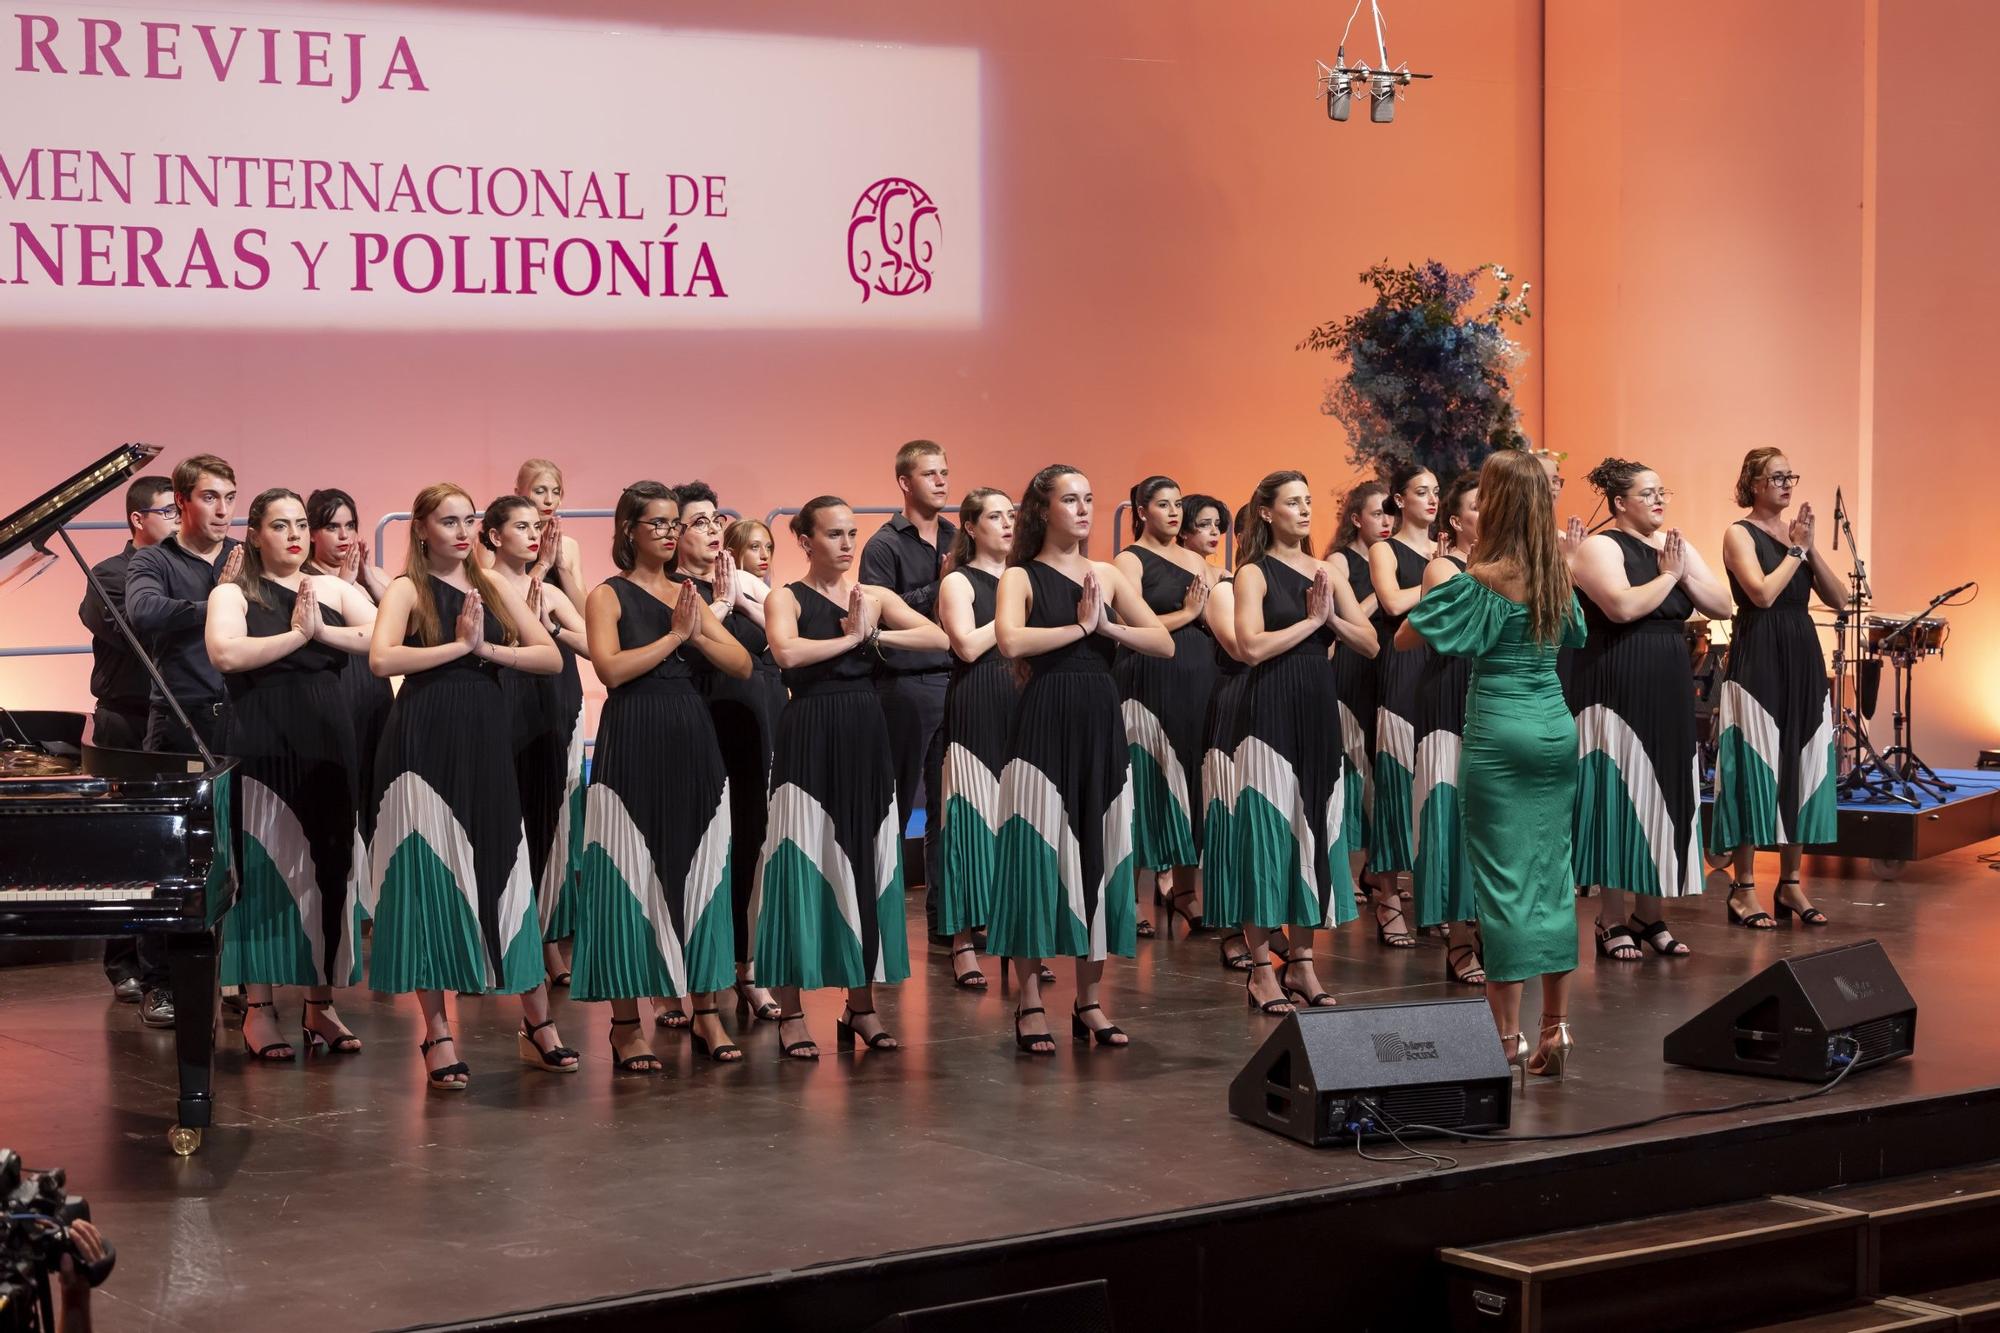 Gala inaugural del Certamen Internacional de Habaneras y Polifonía de Torrevieja con la actuación de Pasión Vega